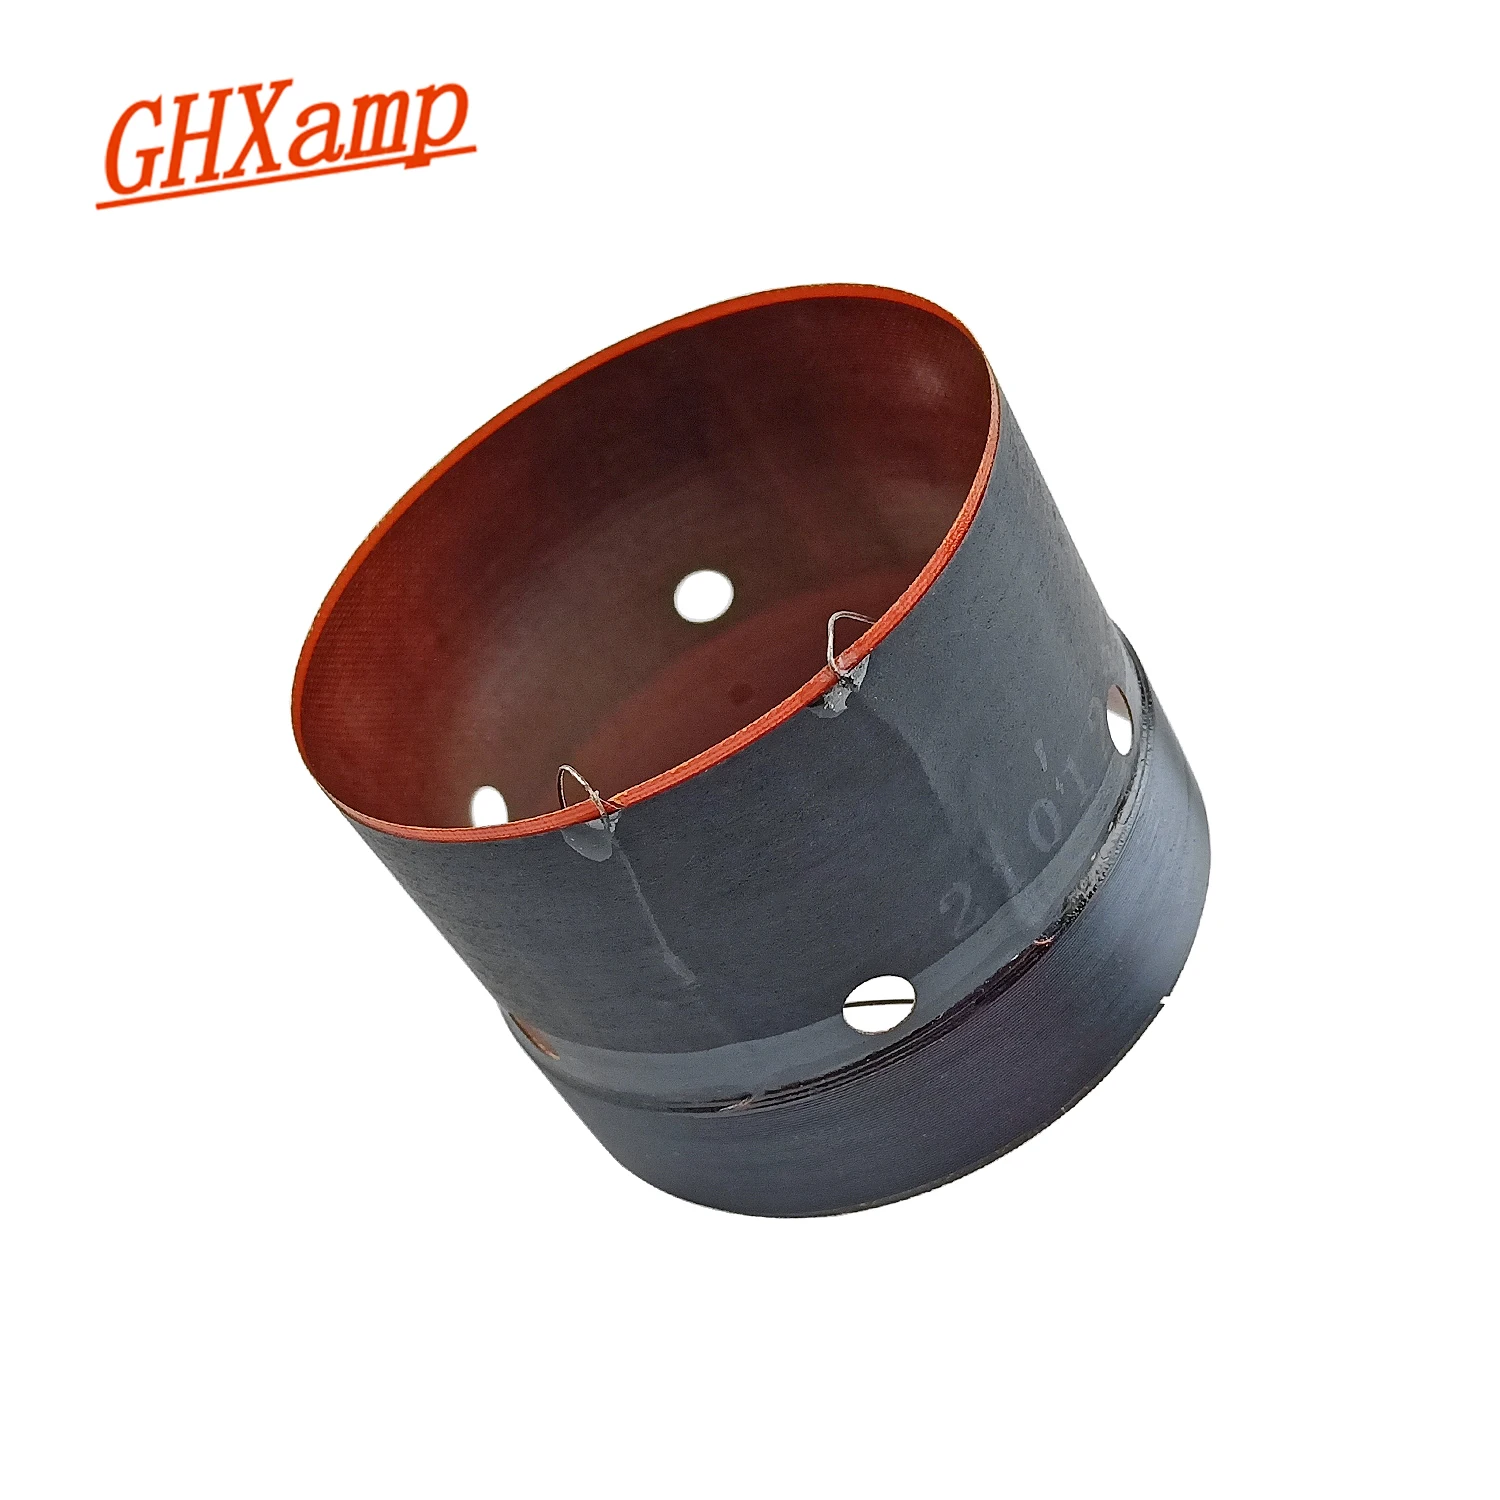 

GHXAMP 8 Ом 65,5 мм для JBL KP4010 высокопрофессиональный динамик басовая катушка 4-слойный CCAW кабель из стекловолокна 1 шт.